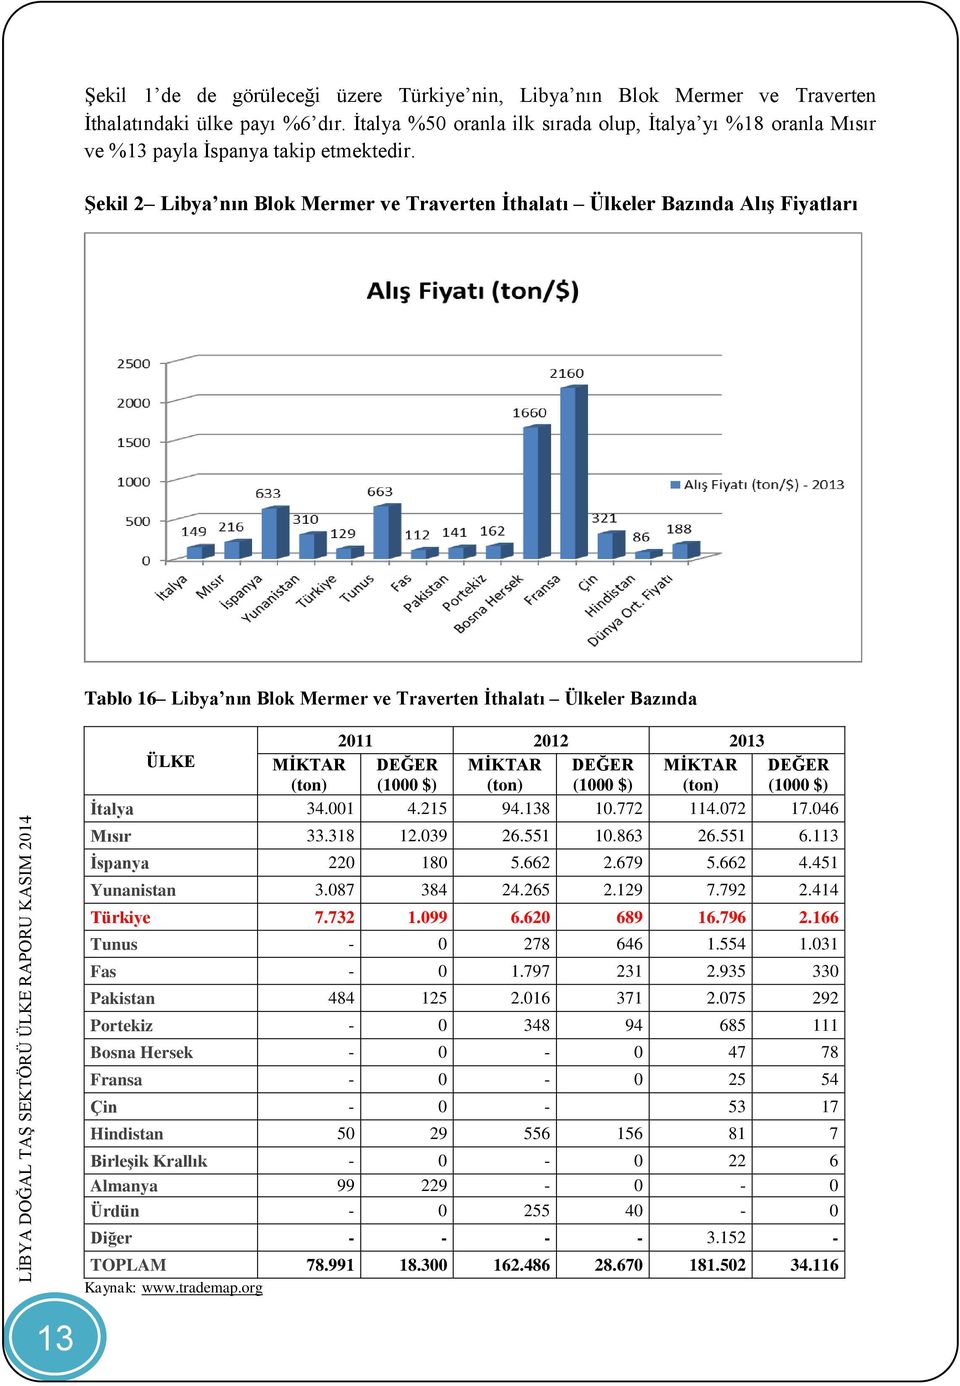 Şekil 2 Libya nın Blok Mermer ve Traverten İthalatı Ülkeler Bazında Alış Fiyatları Tablo 16 Libya nın Blok Mermer ve Traverten İthalatı Ülkeler Bazında 2011 2012 2013 ÜLKE MİKTAR MİKTAR MİKTAR İtalya